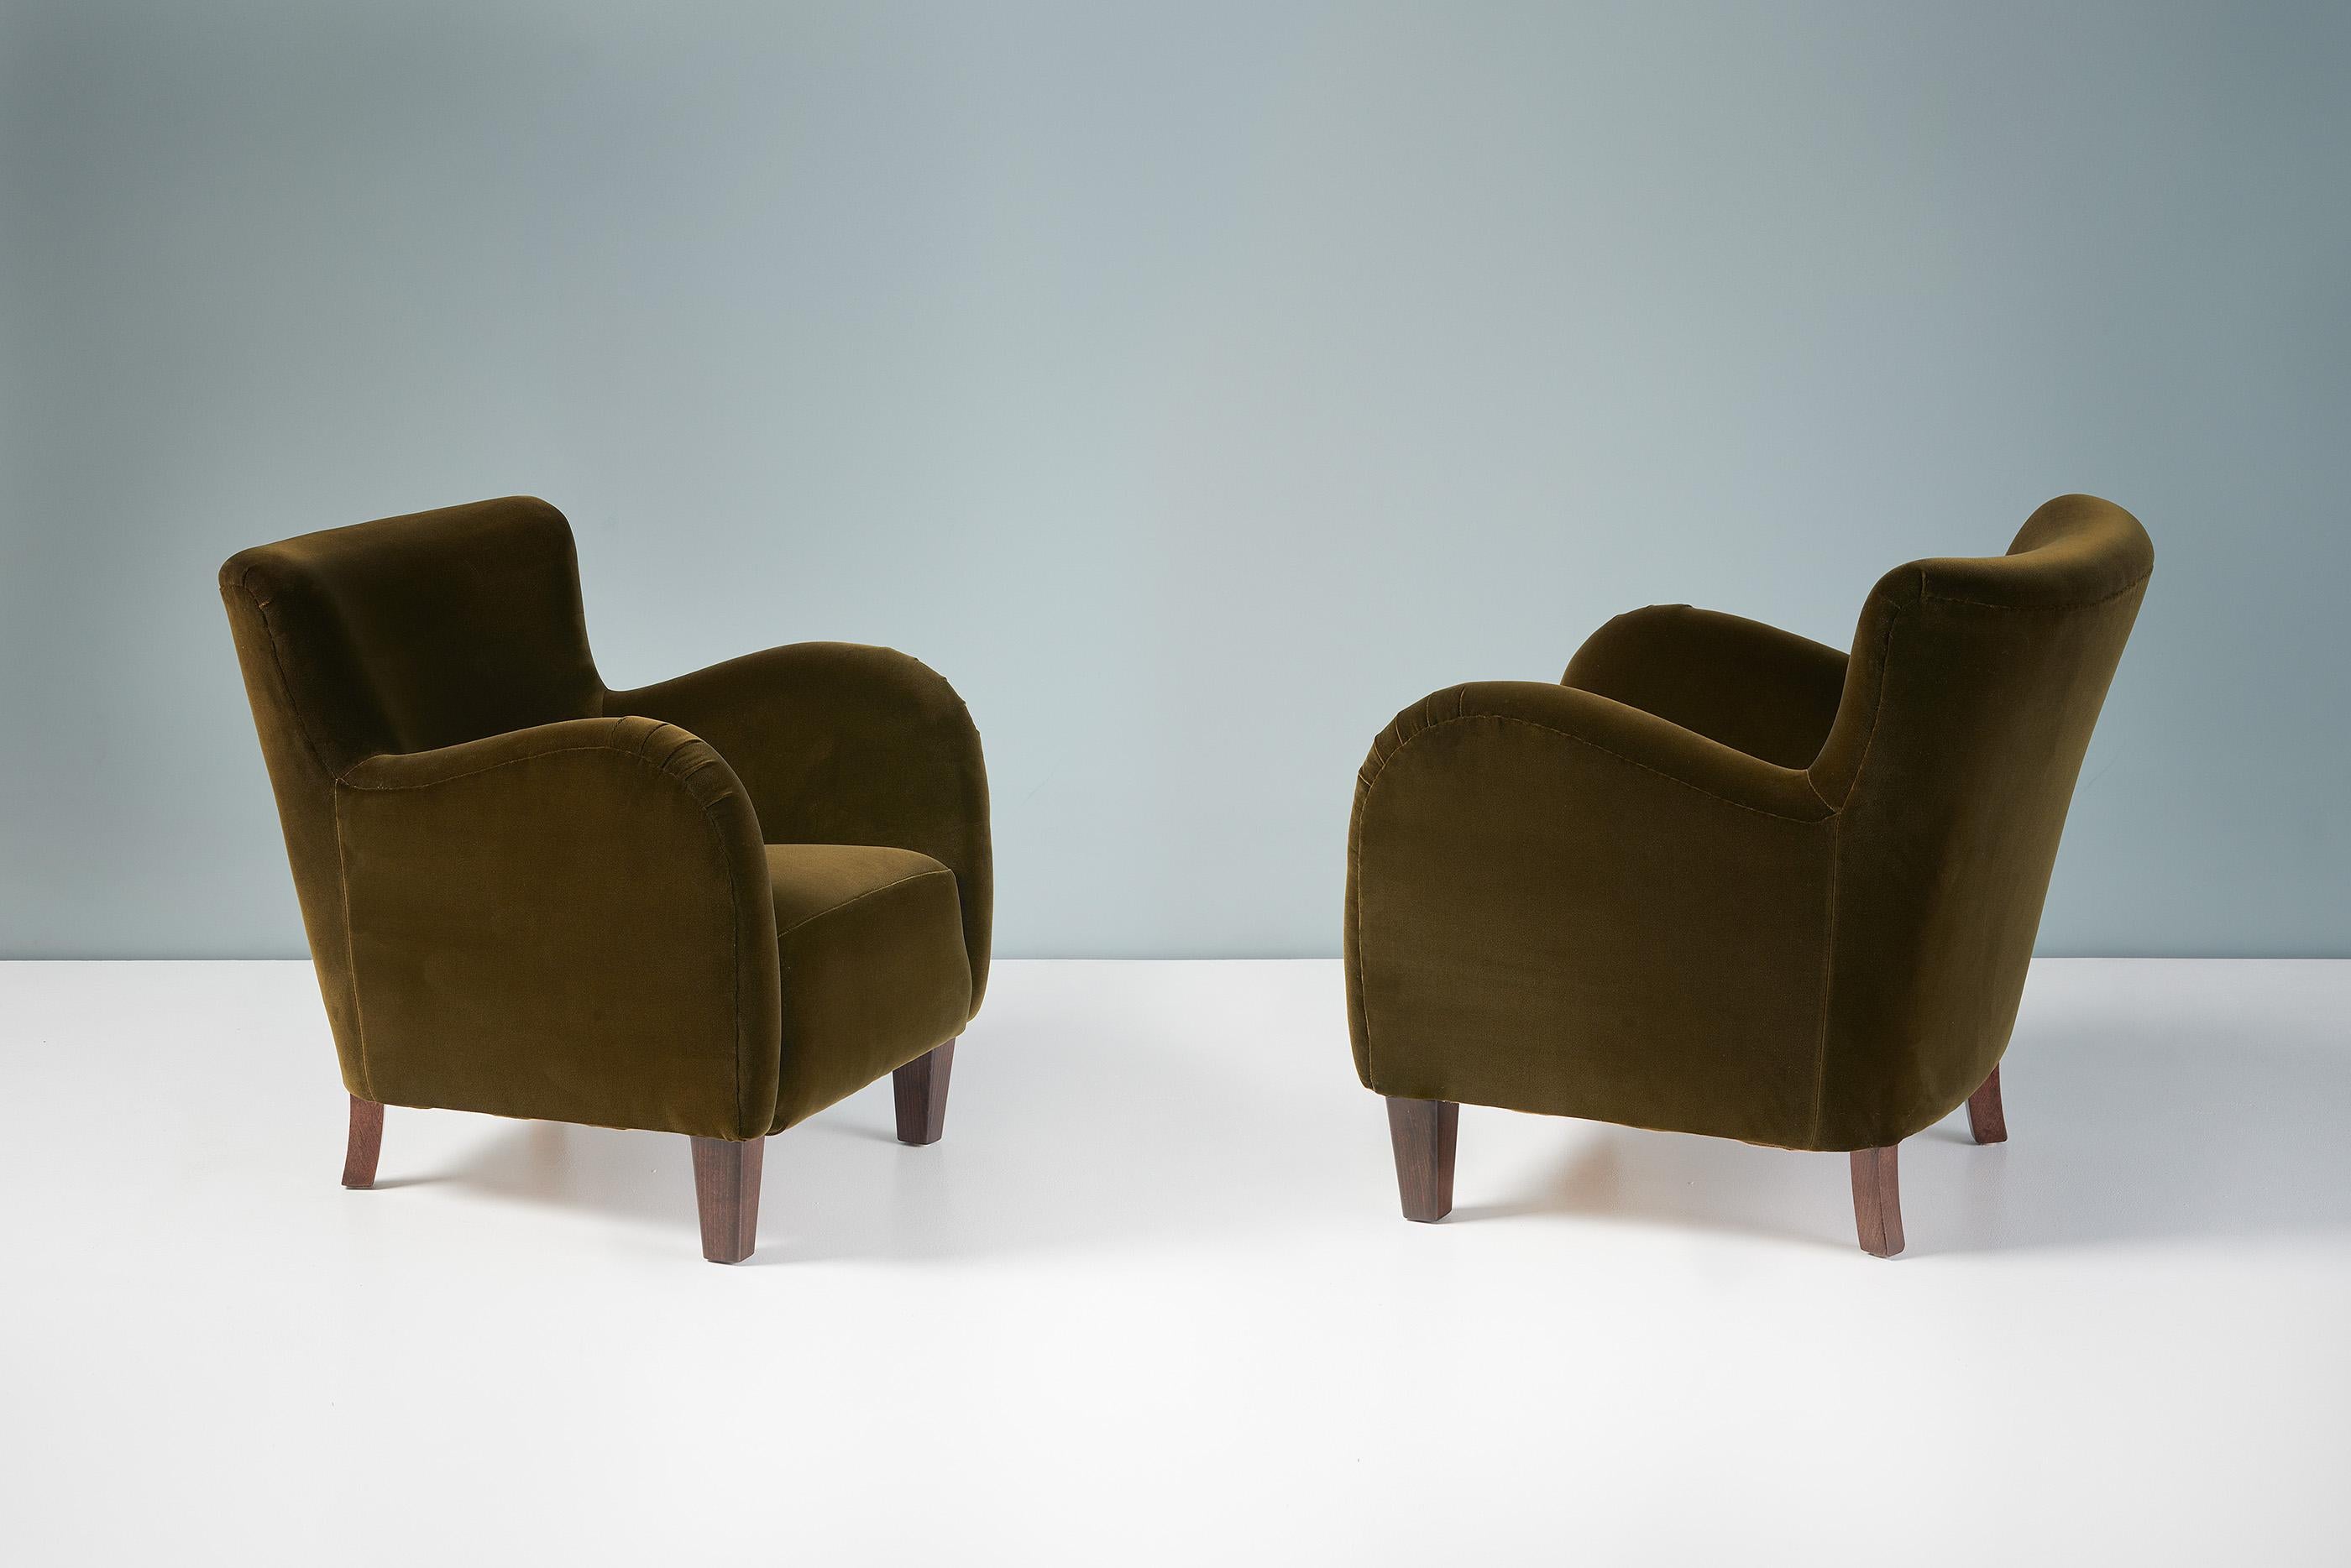 Ein Paar Loungesessel aus den 1940er Jahren, hergestellt von einem dänischen Tischler in den 1940er Jahren. Diese Exemplare wurden mit einem moosgrünen Samtstoff von Rose Uniacke neu gepolstert. Die Beine sind aus gebeiztem Buchenholz.

Jeder Stuhl